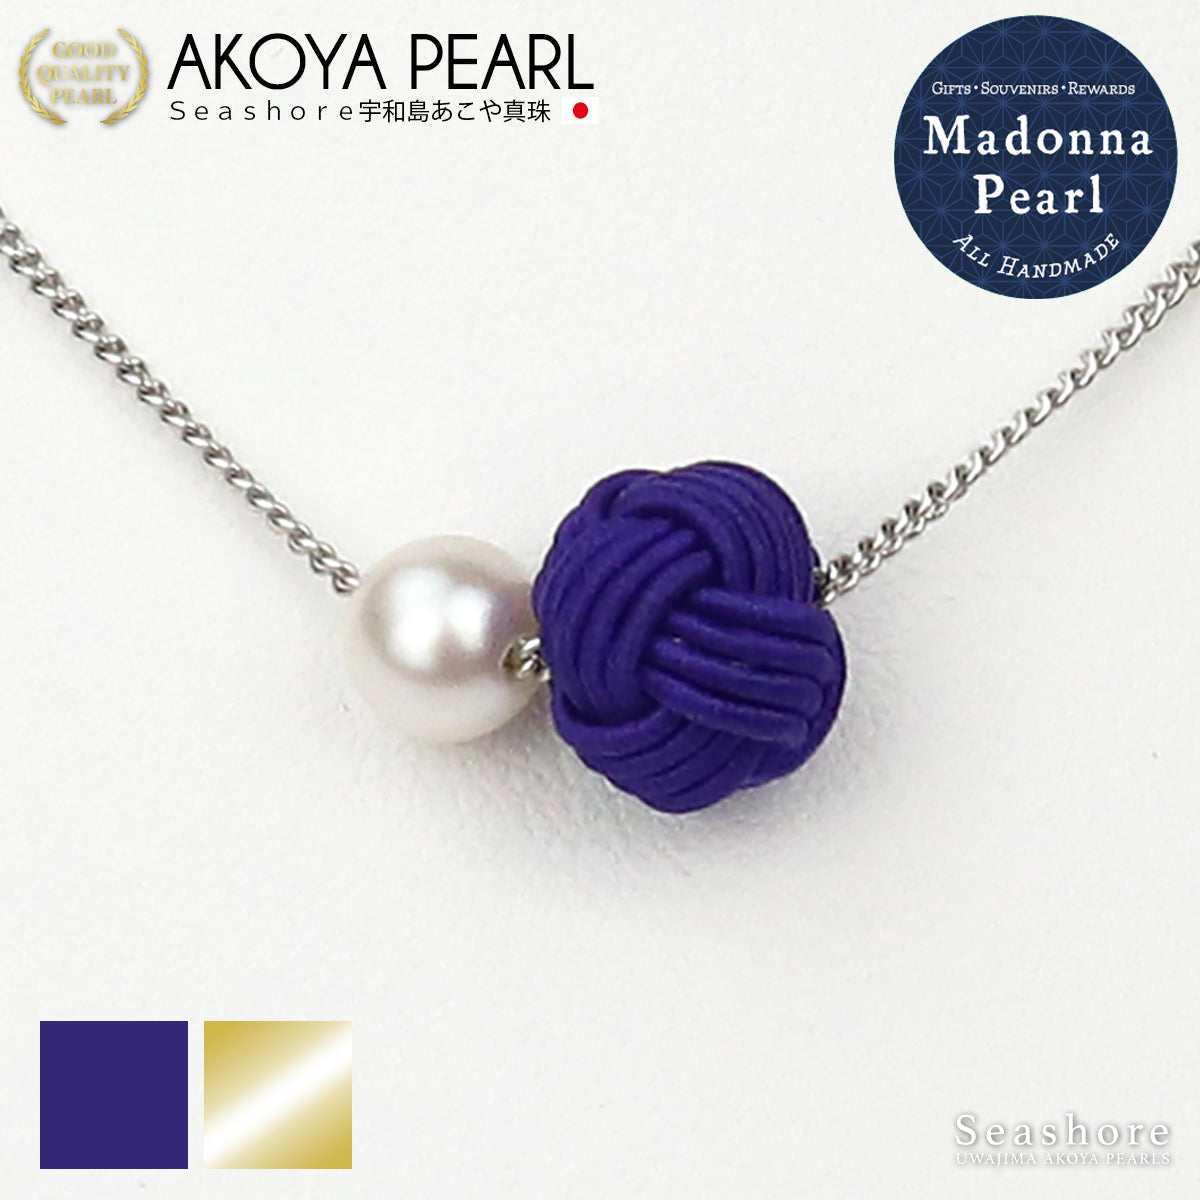 【Madonna Pearl】 あこや真珠 ネックレス 水引玉結びペンダント 6.0-6.5mm あわじ玉 ブルー ゴールド